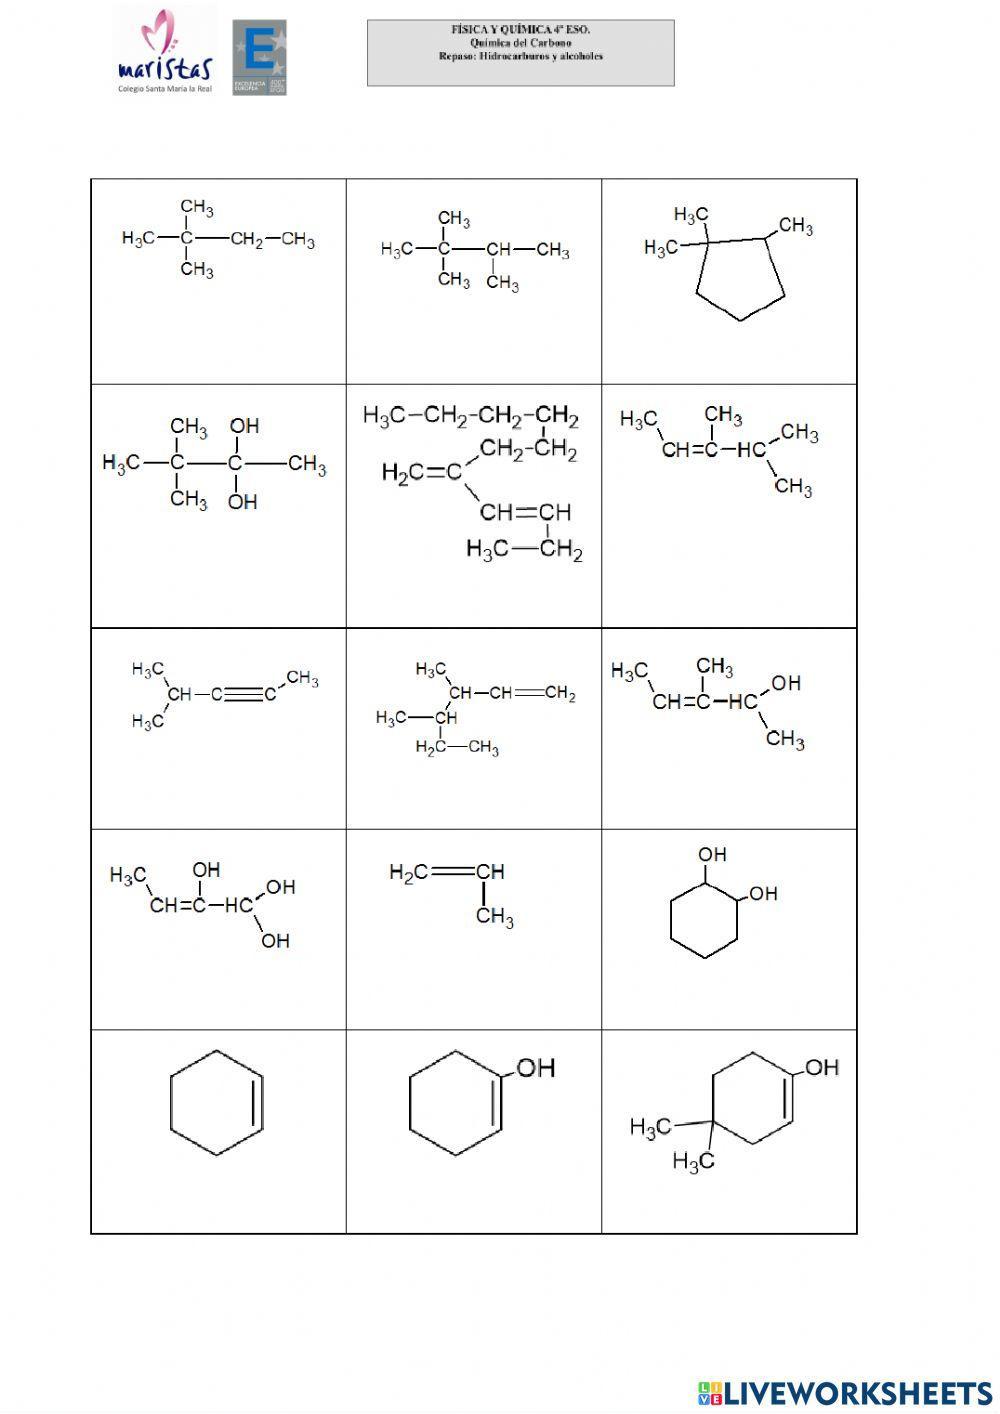 Quimica del carbono: Hidrocarburos y alcoholes